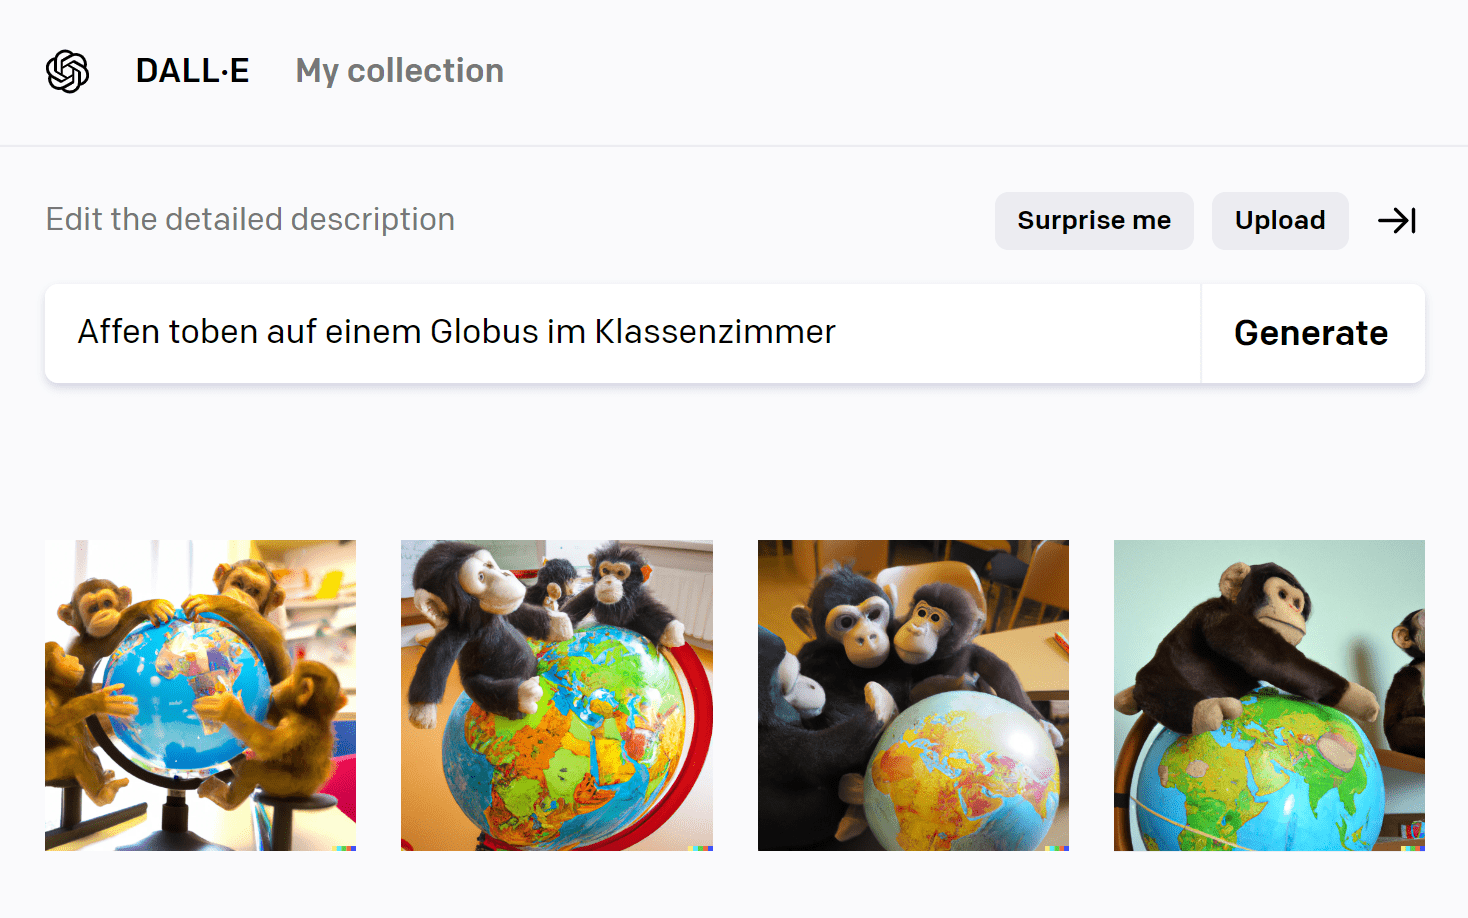 Affen mit Globus